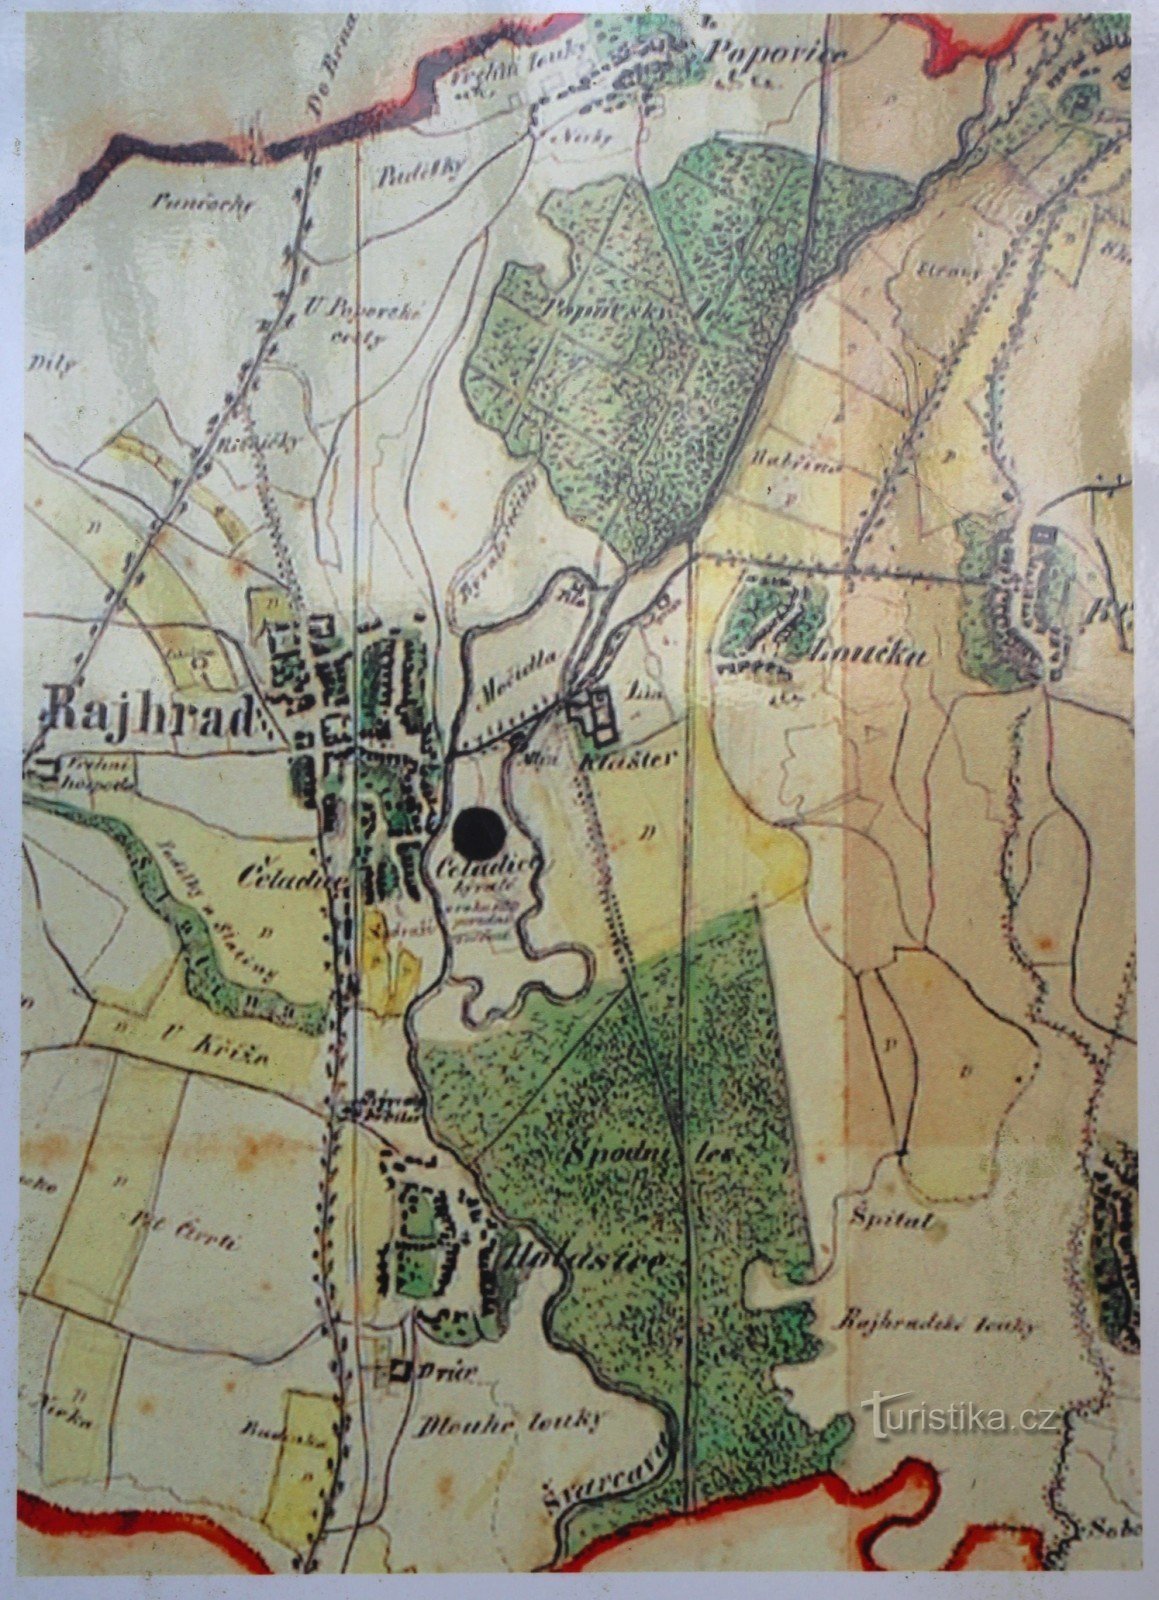 Kaart van de omgeving van het klooster uit het midden van de 19e eeuw, het is duidelijk zichtbaar in de onderste helft van de kaart